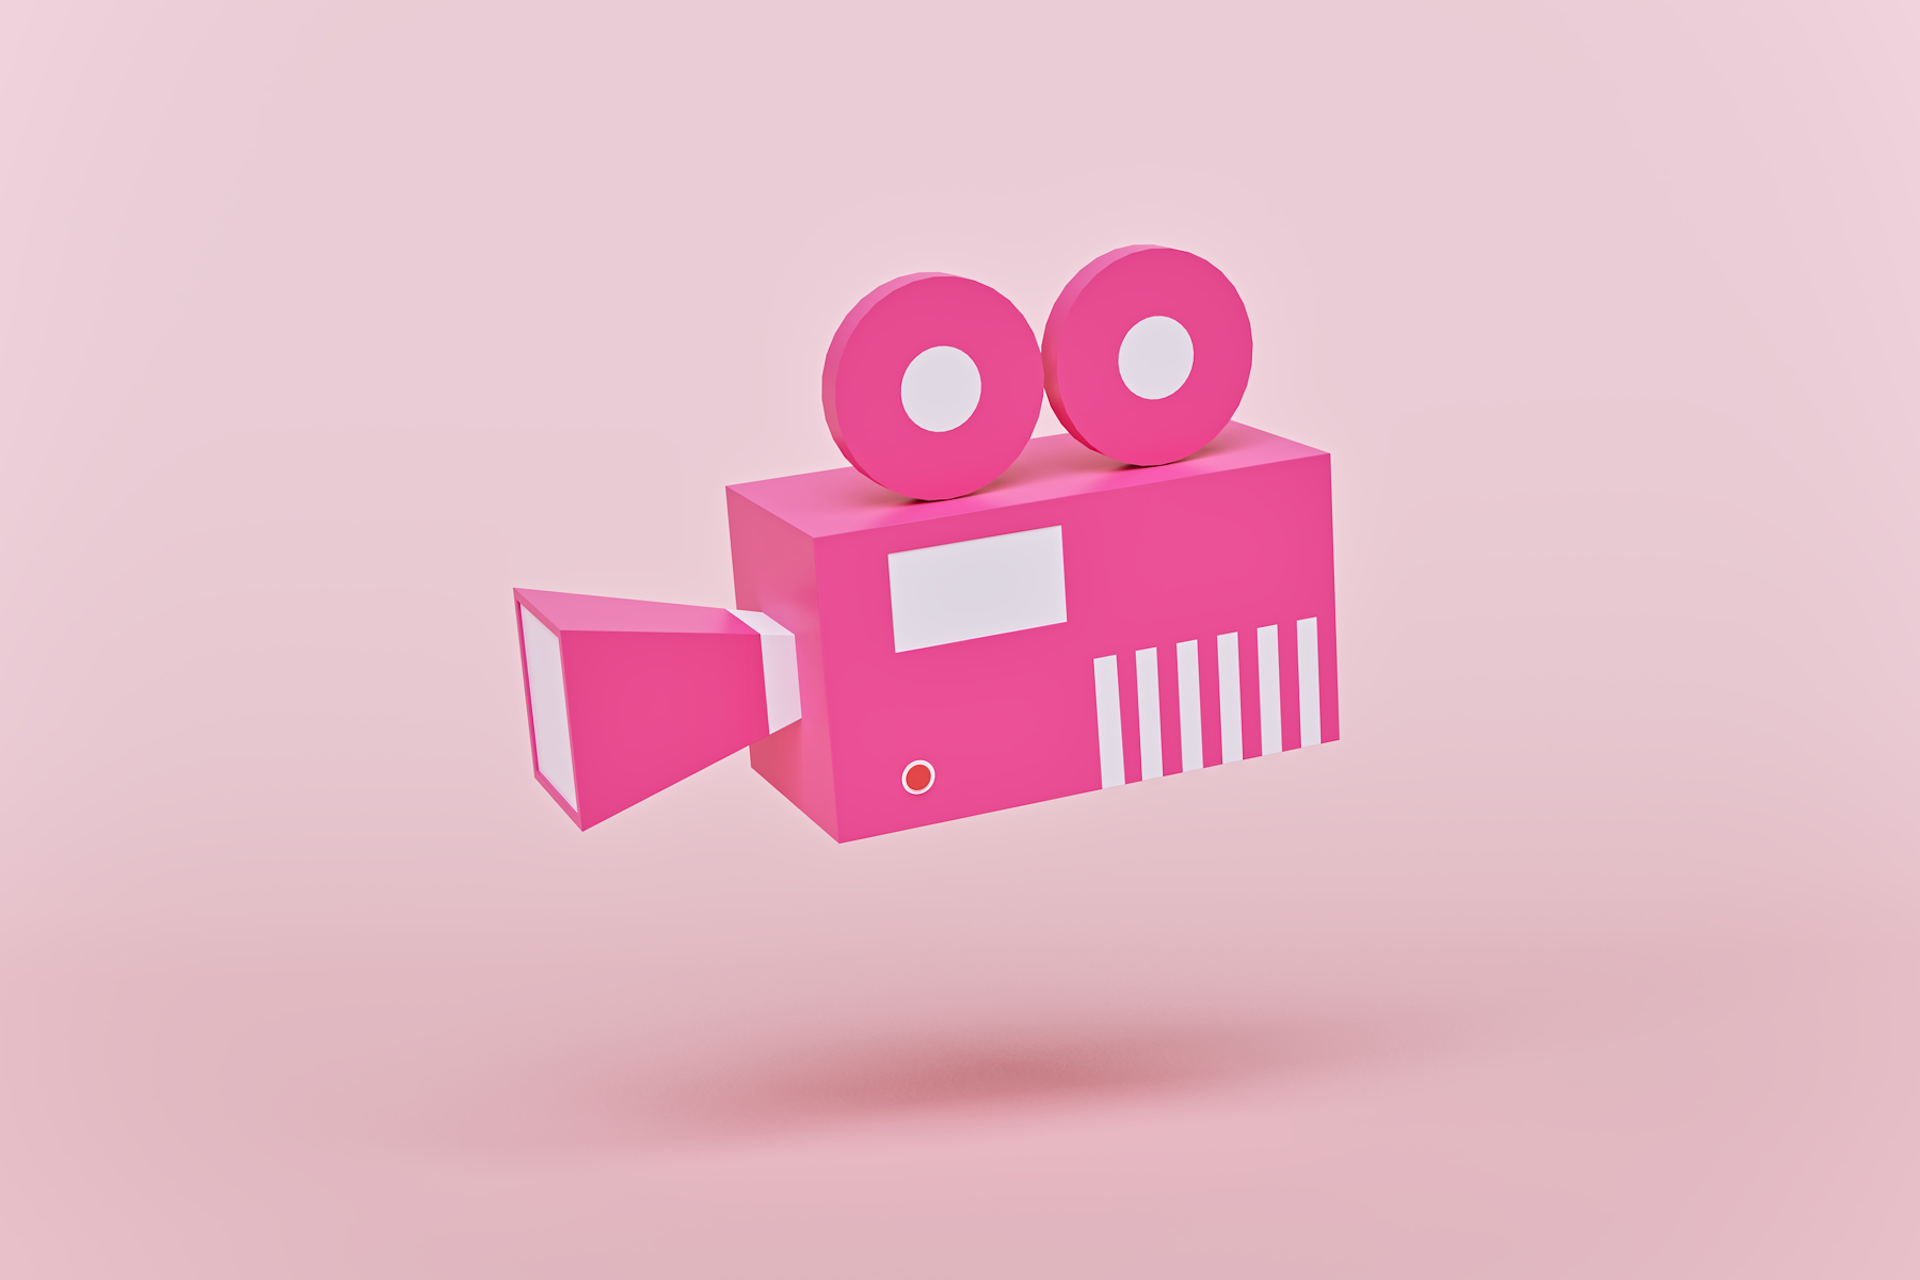 Caméra de cinéma rose à l'ancienne sur fond rose pâle. 50 idées de vidéos pour les marques